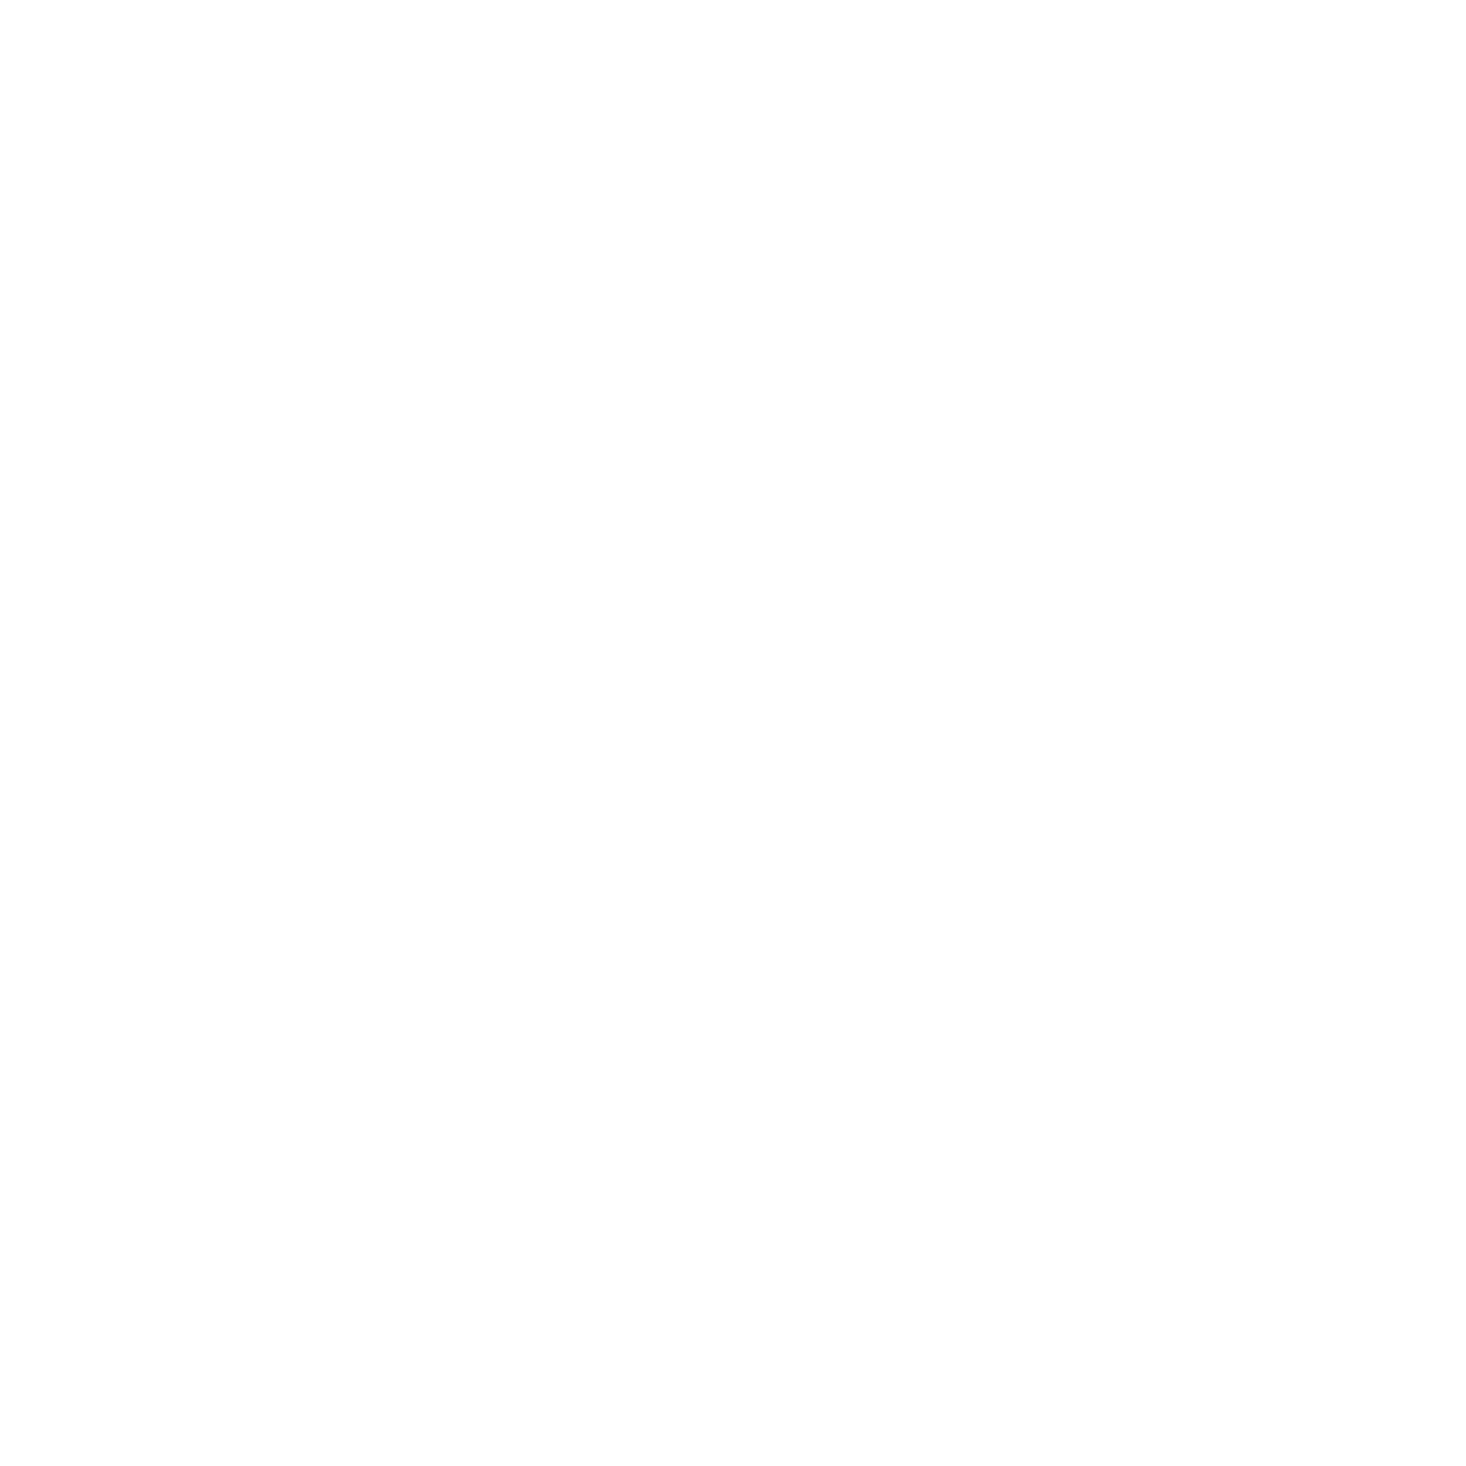 RA ANSWER